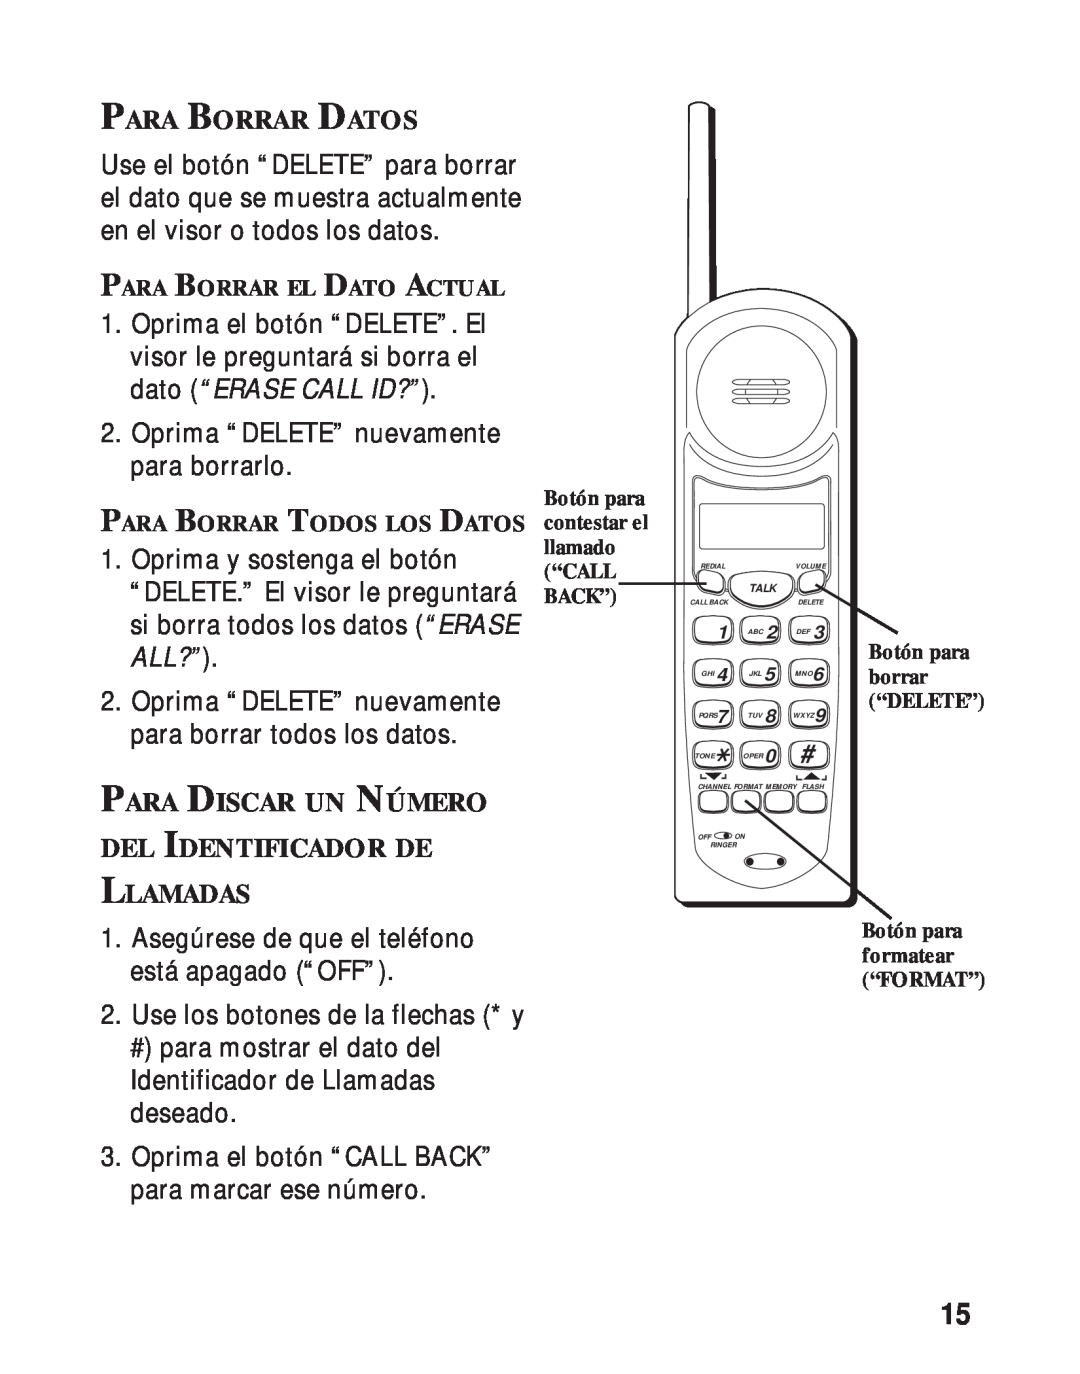 RCA 26730 manual Para Borrar Datos, Para Discar Un Número Del Identificador De Llamadas, dato “ERASE CALL ID?”, All?” 